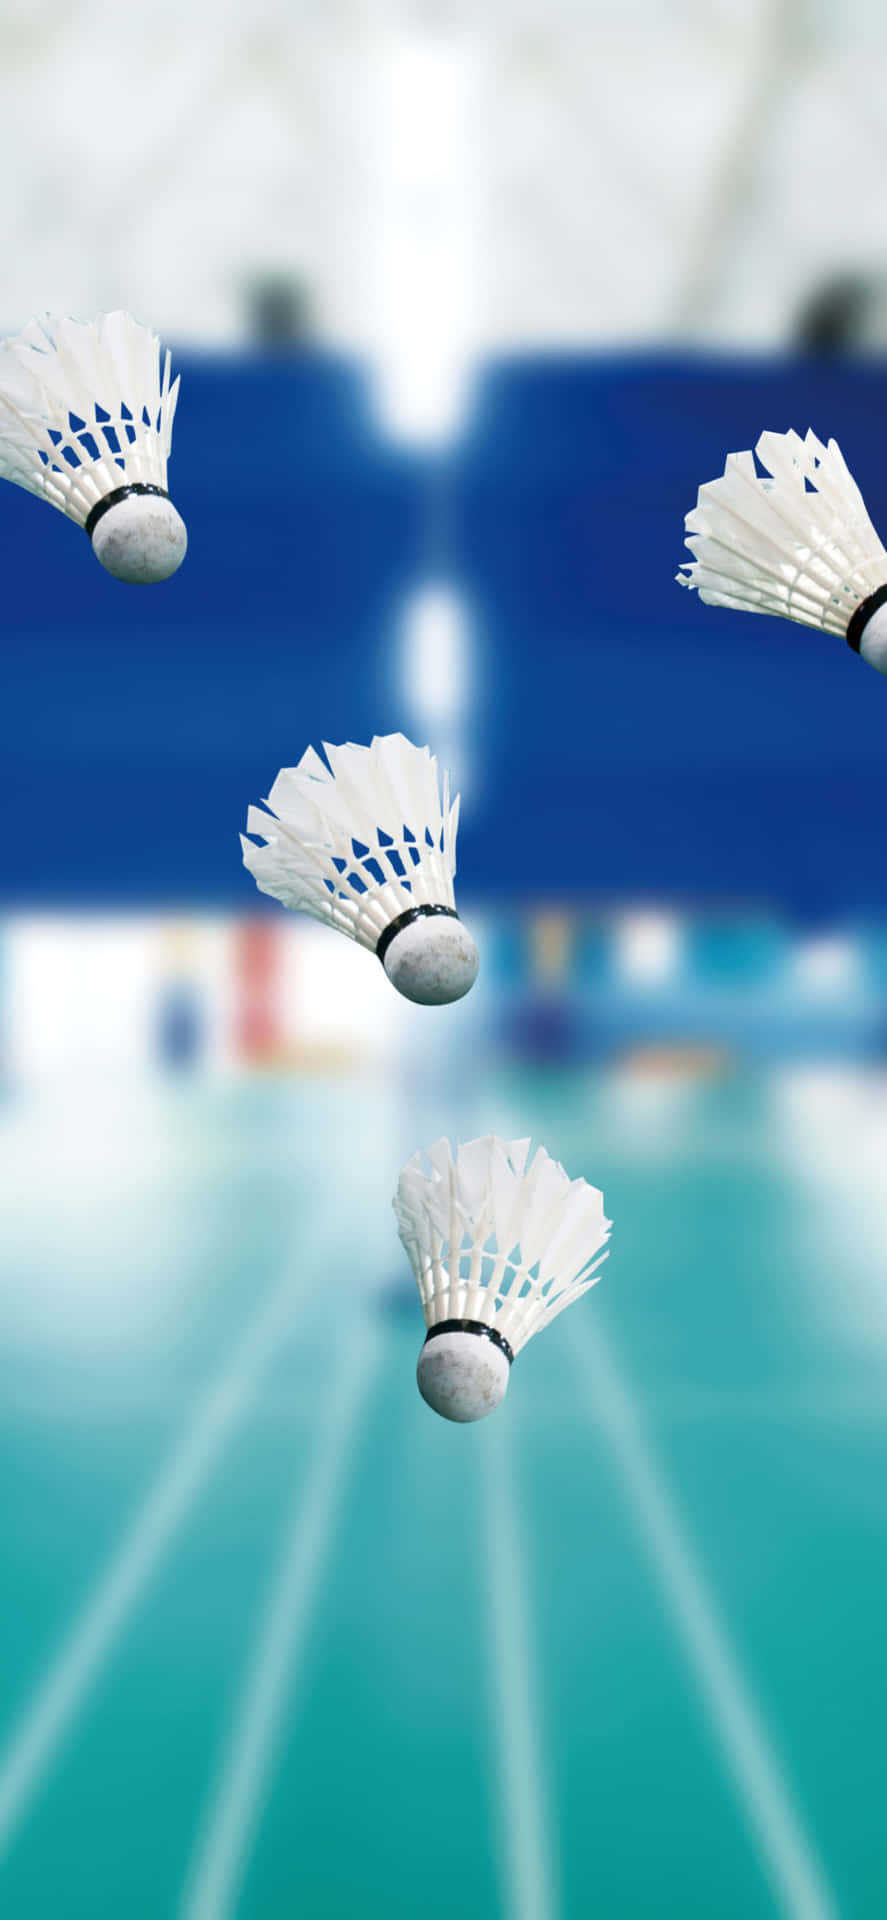 Divertitia Giocare A Badminton Con Il Nuovo Iphone Xs Max.